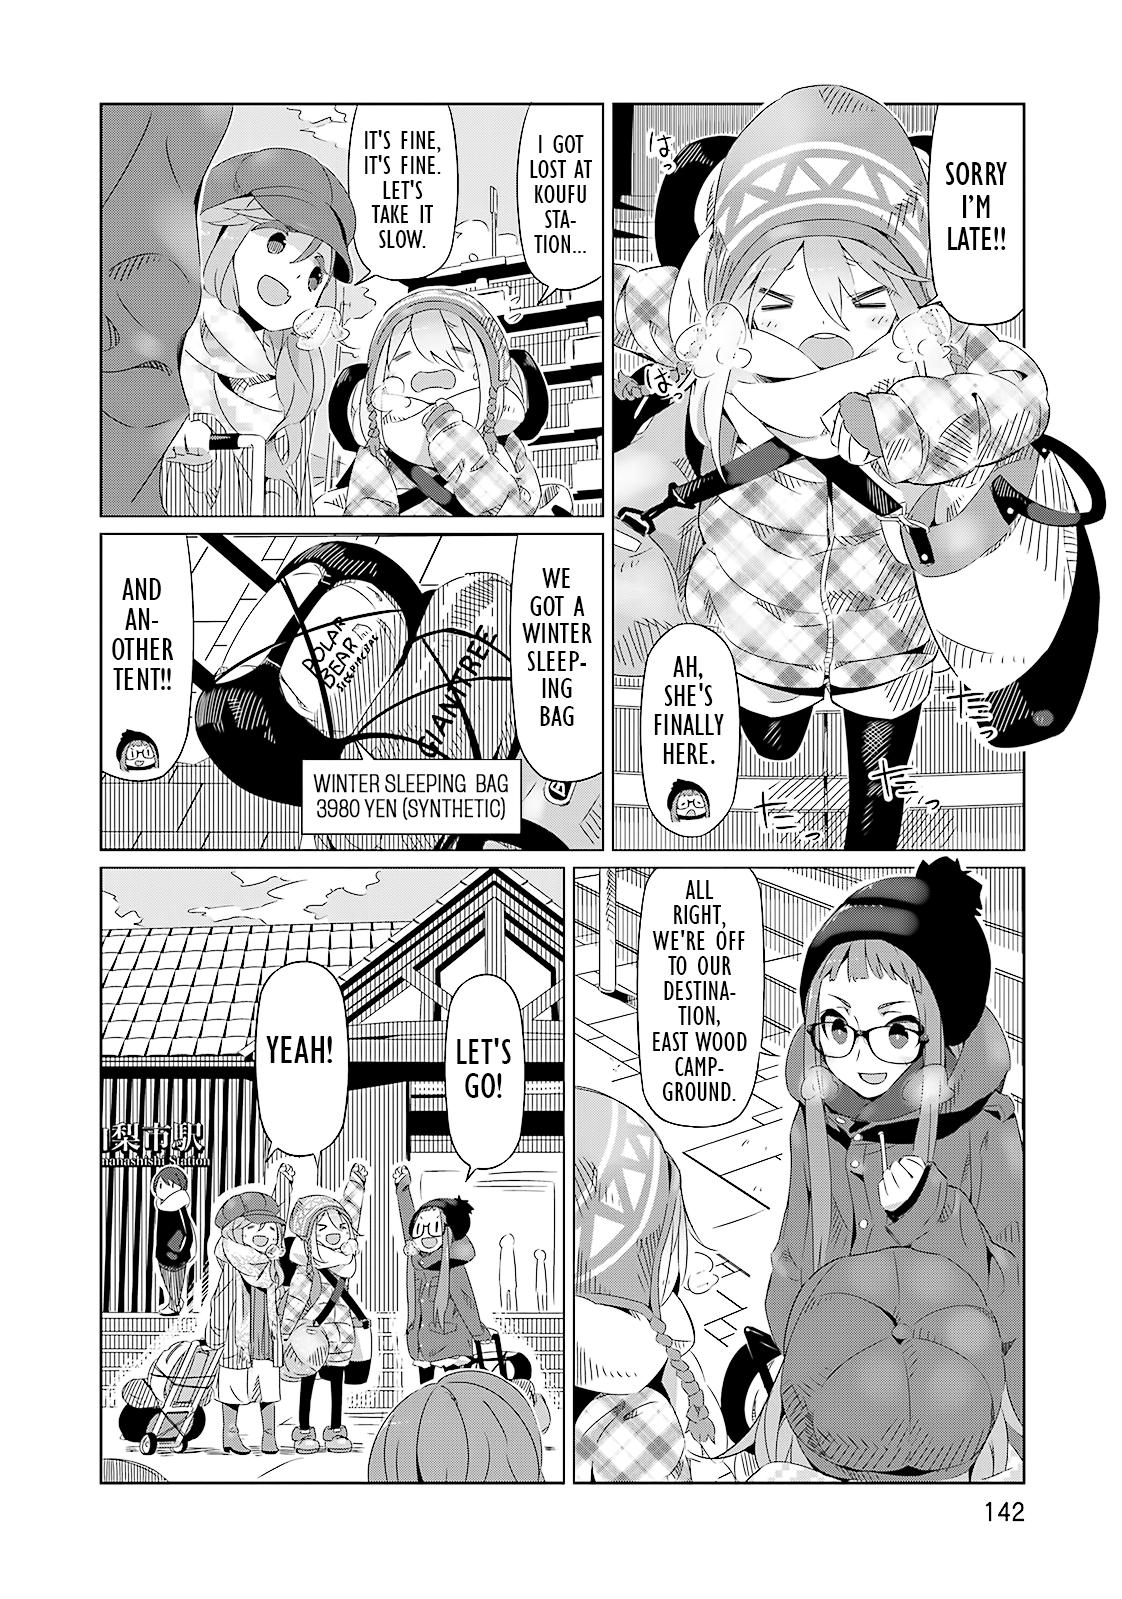 Yuru Camp Manga, Laid-back camp